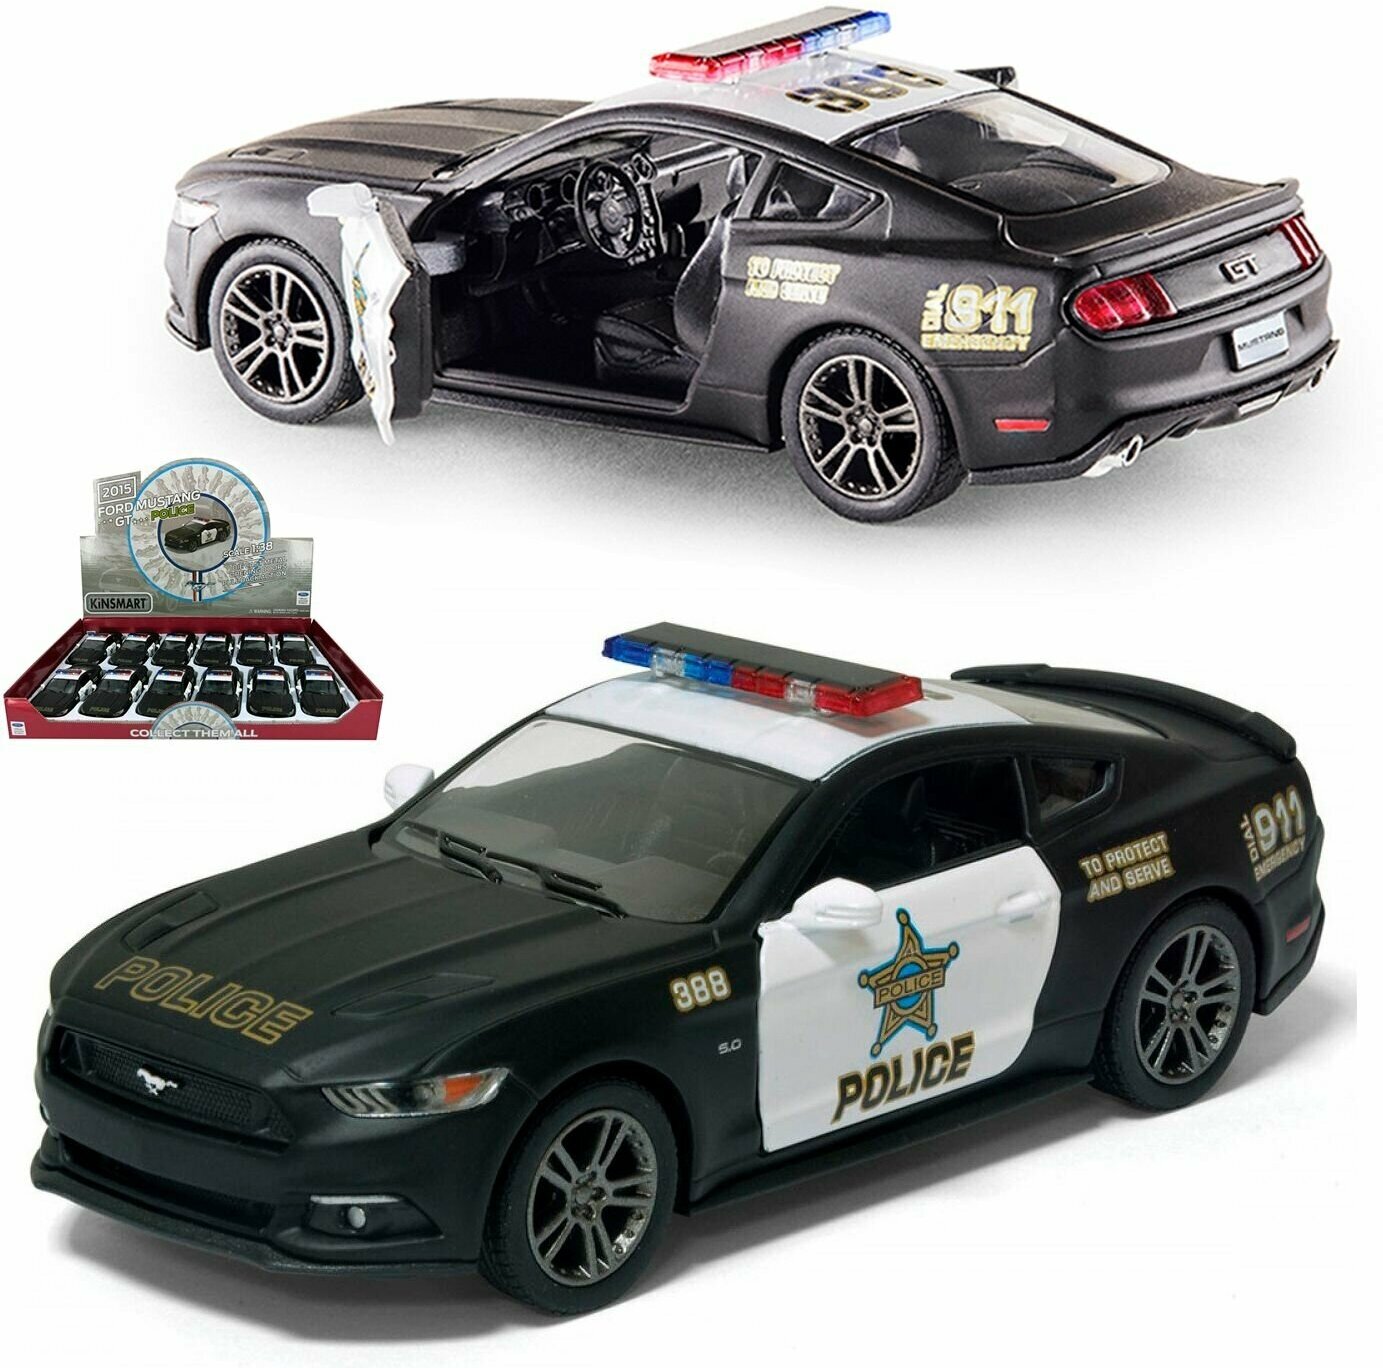 Металлическая машинка игрушка 1:38 2015 Ford Mustang GT Police (Форд Мустанг Полицейский) инерционная / Черный